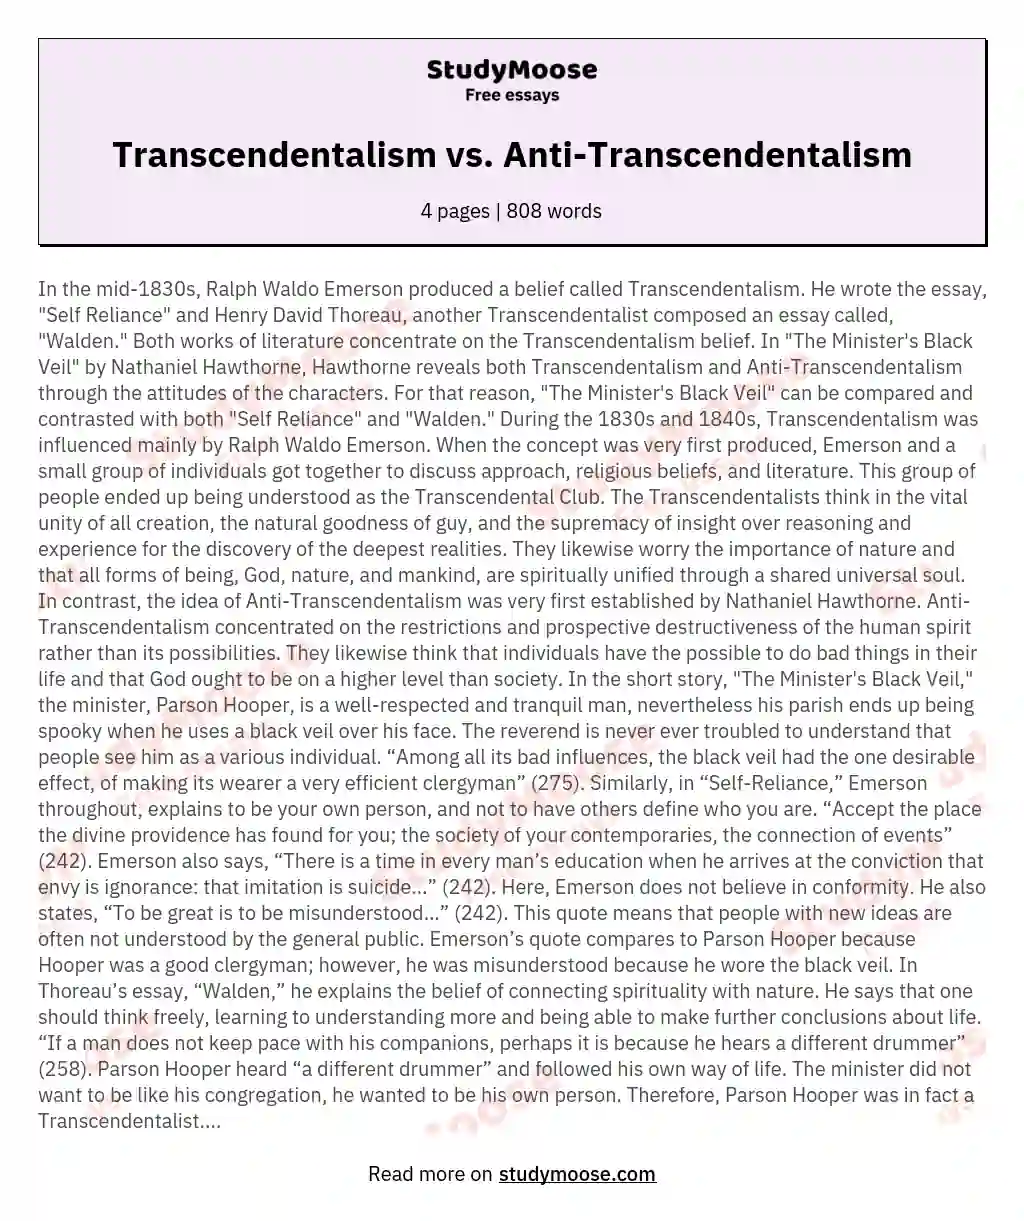 Transcendentalism vs. Anti-Transcendentalism